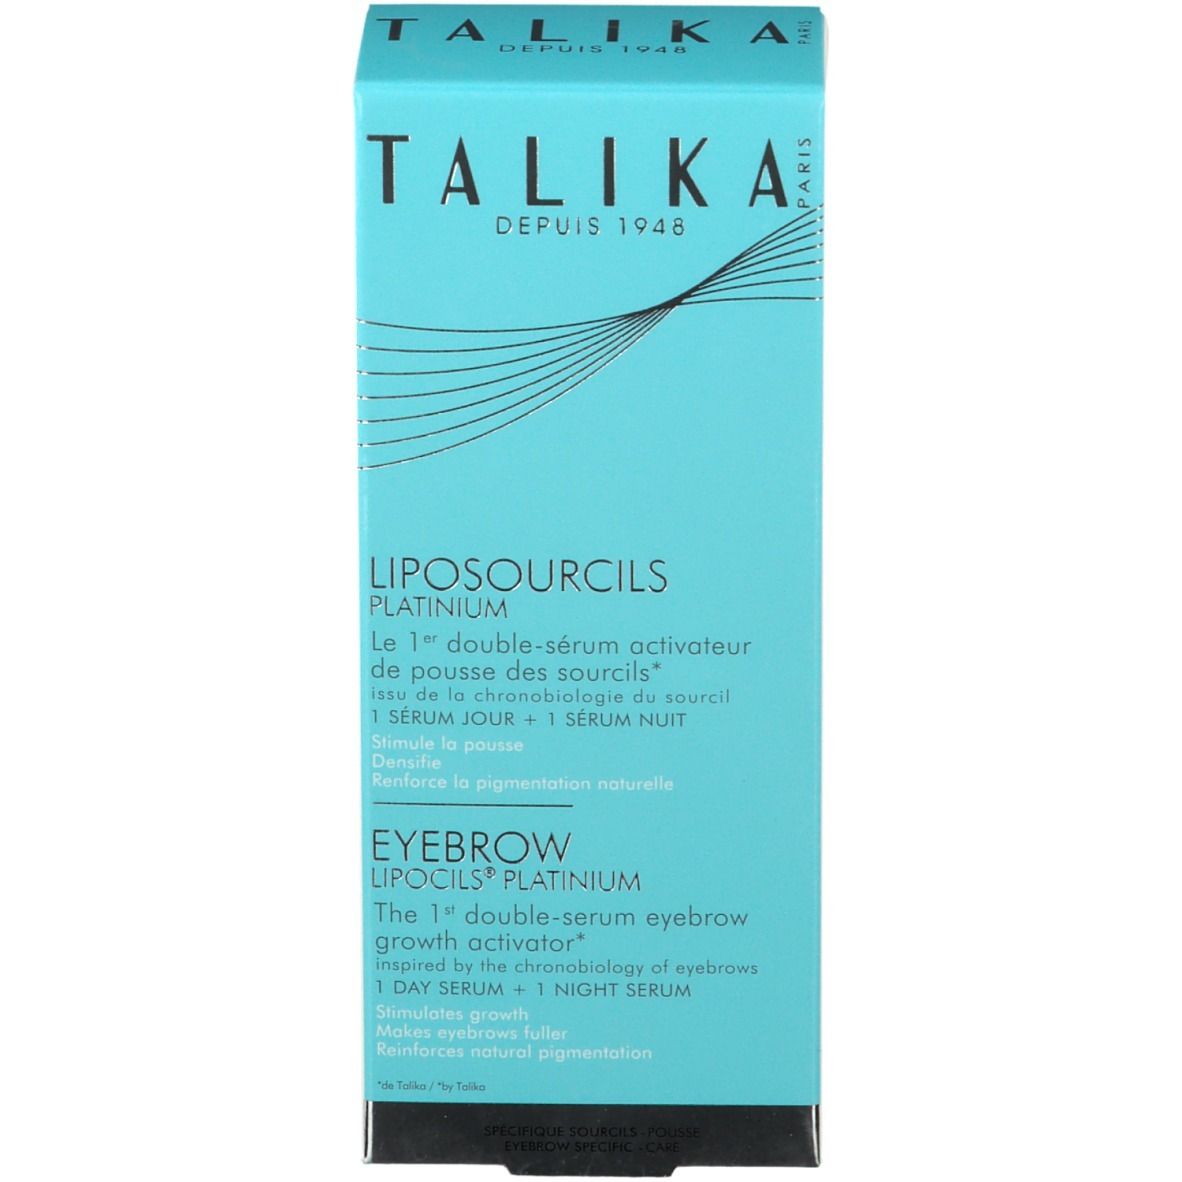 Talika Eyebrow Lipocils Platinum Morning & Night Serum 2 x